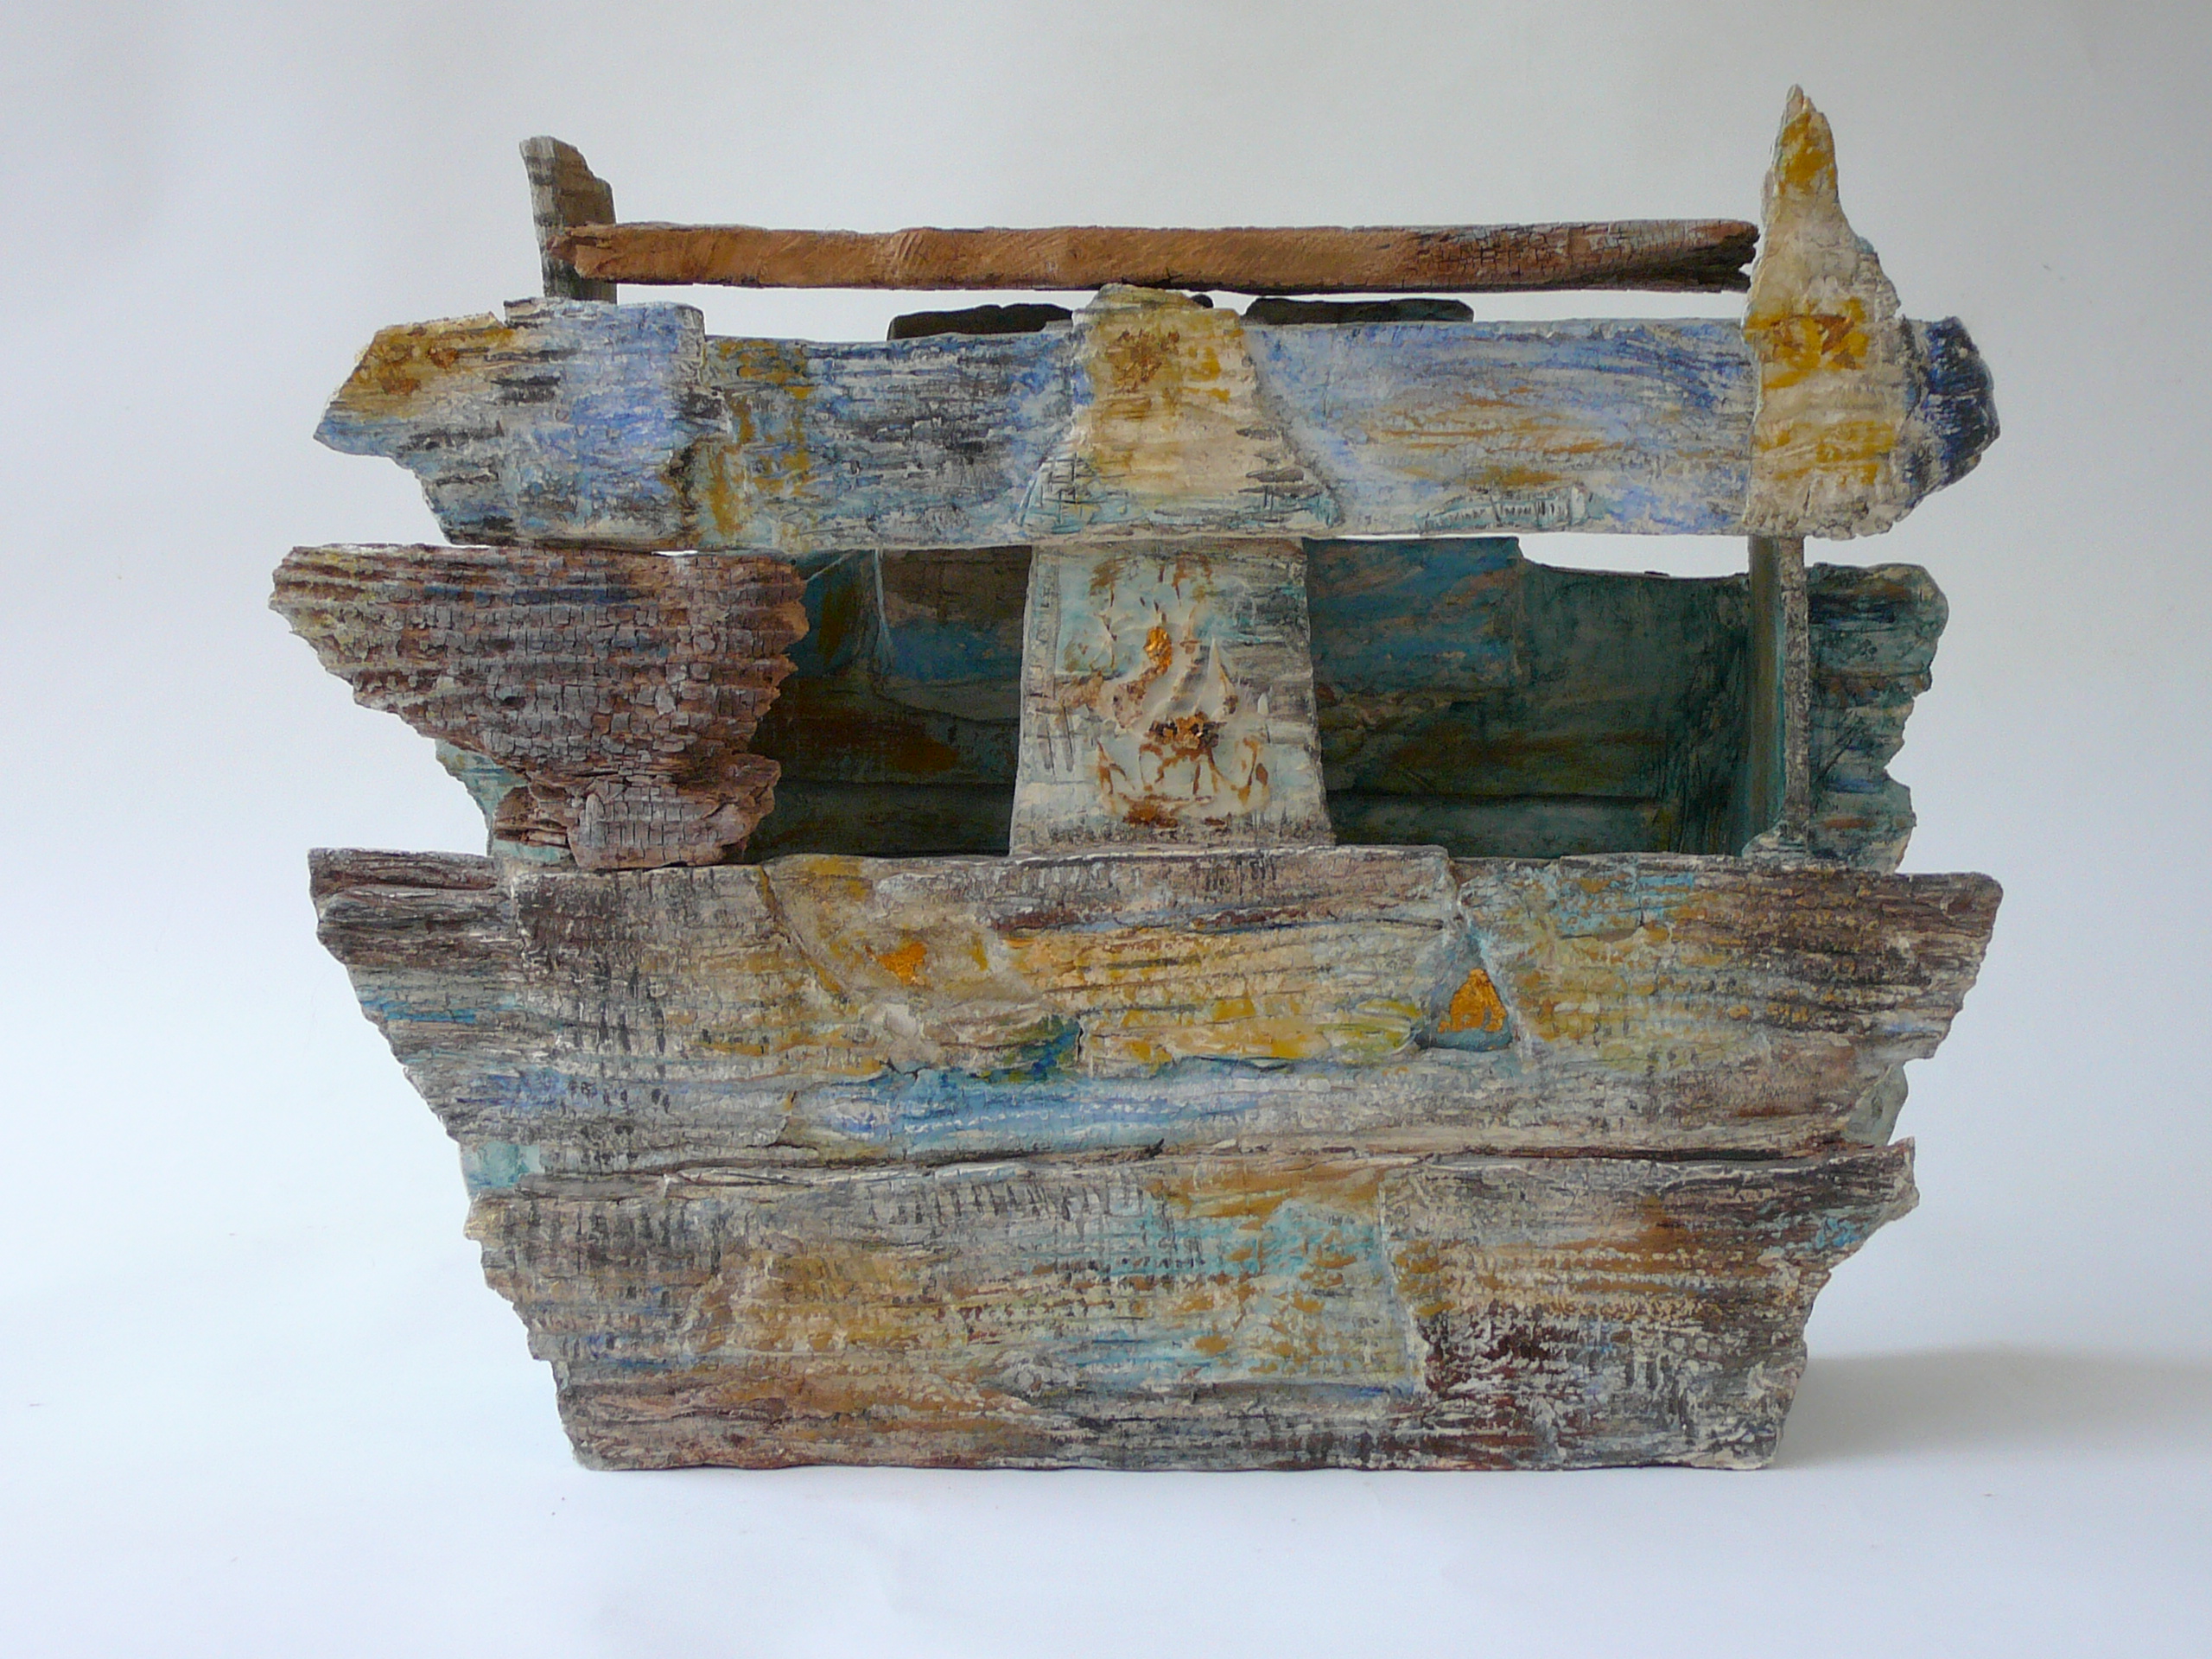 Egyptisch schip keramiek en hout 34 x 40 x 14 cm, 2009